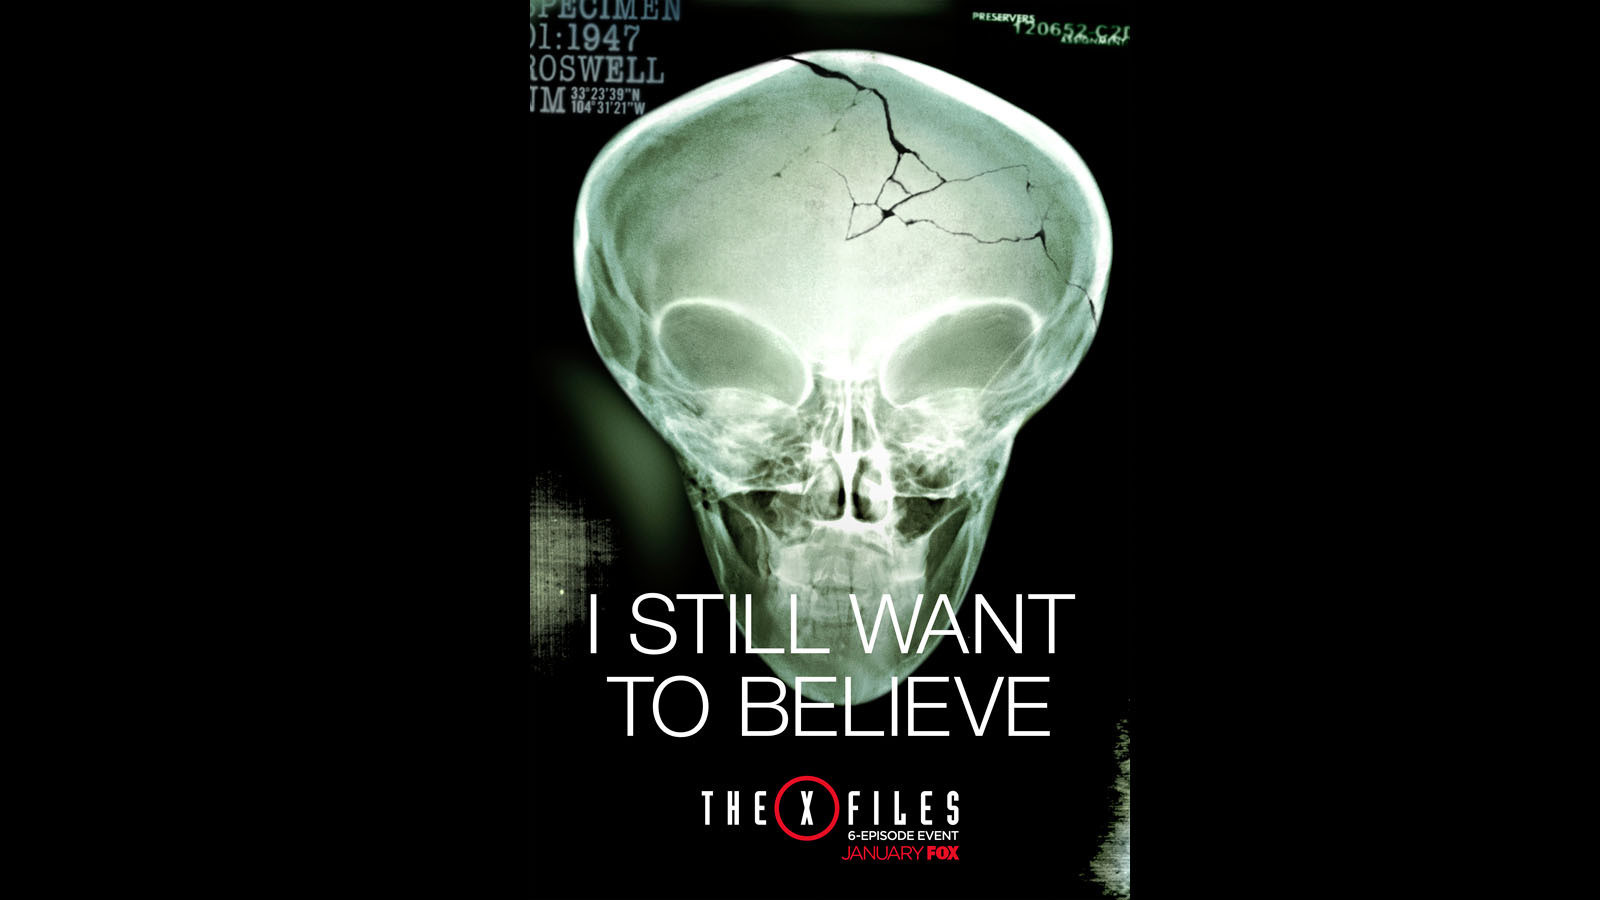 The X-Files': Believe it - LA Times